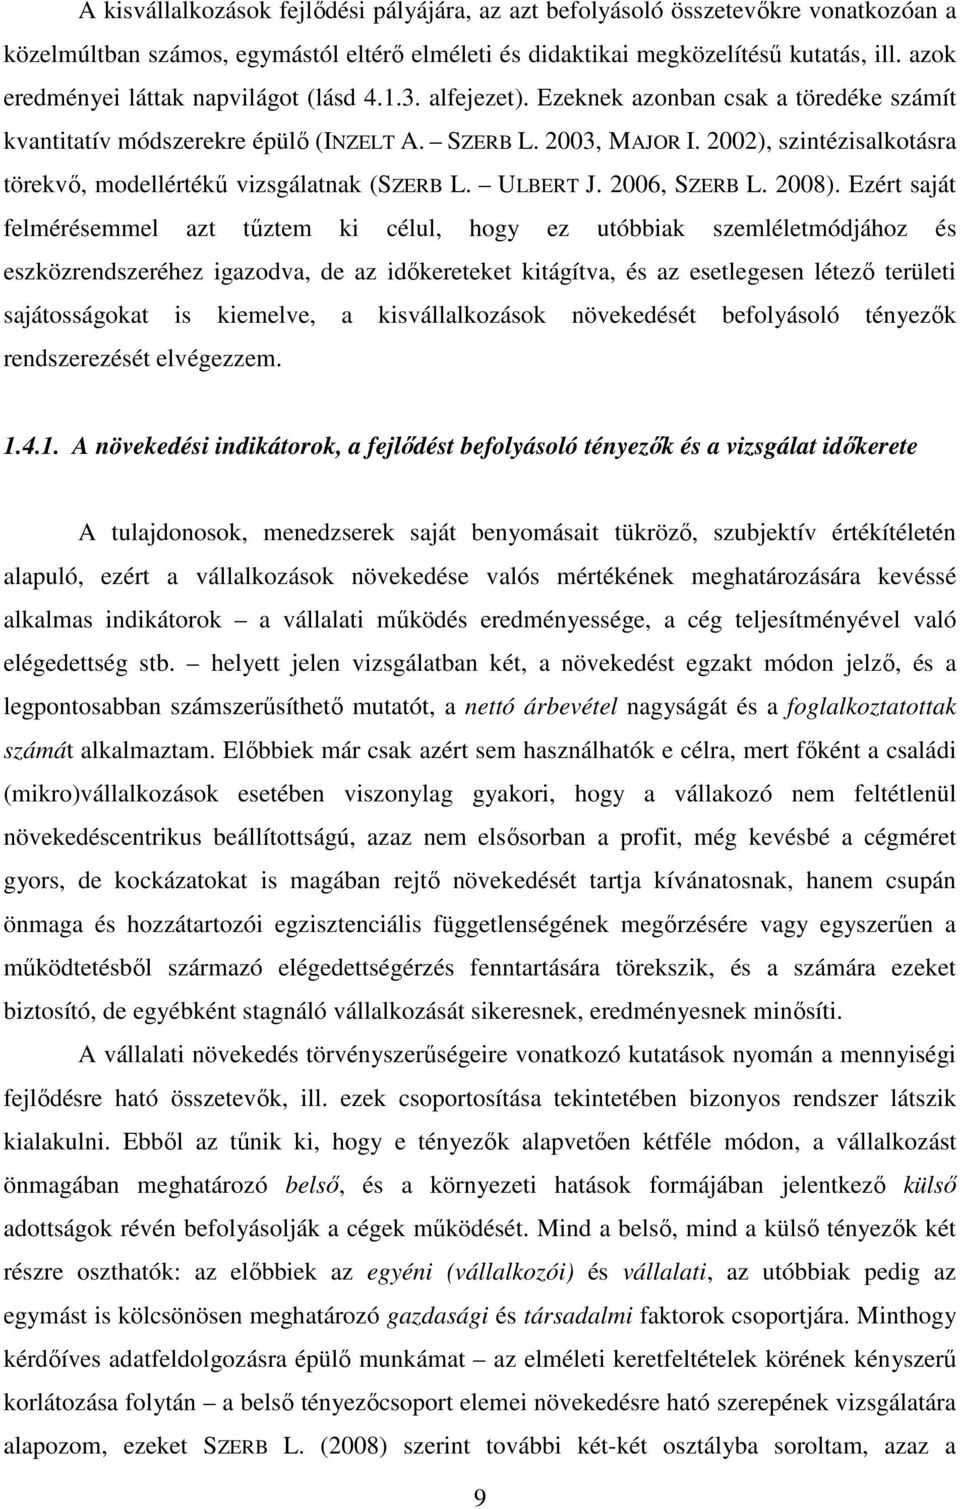 2002), szintézisalkotásra törekvı, modellértékő vizsgálatnak (SZERB L. ULBERT J. 2006, SZERB L. 2008).